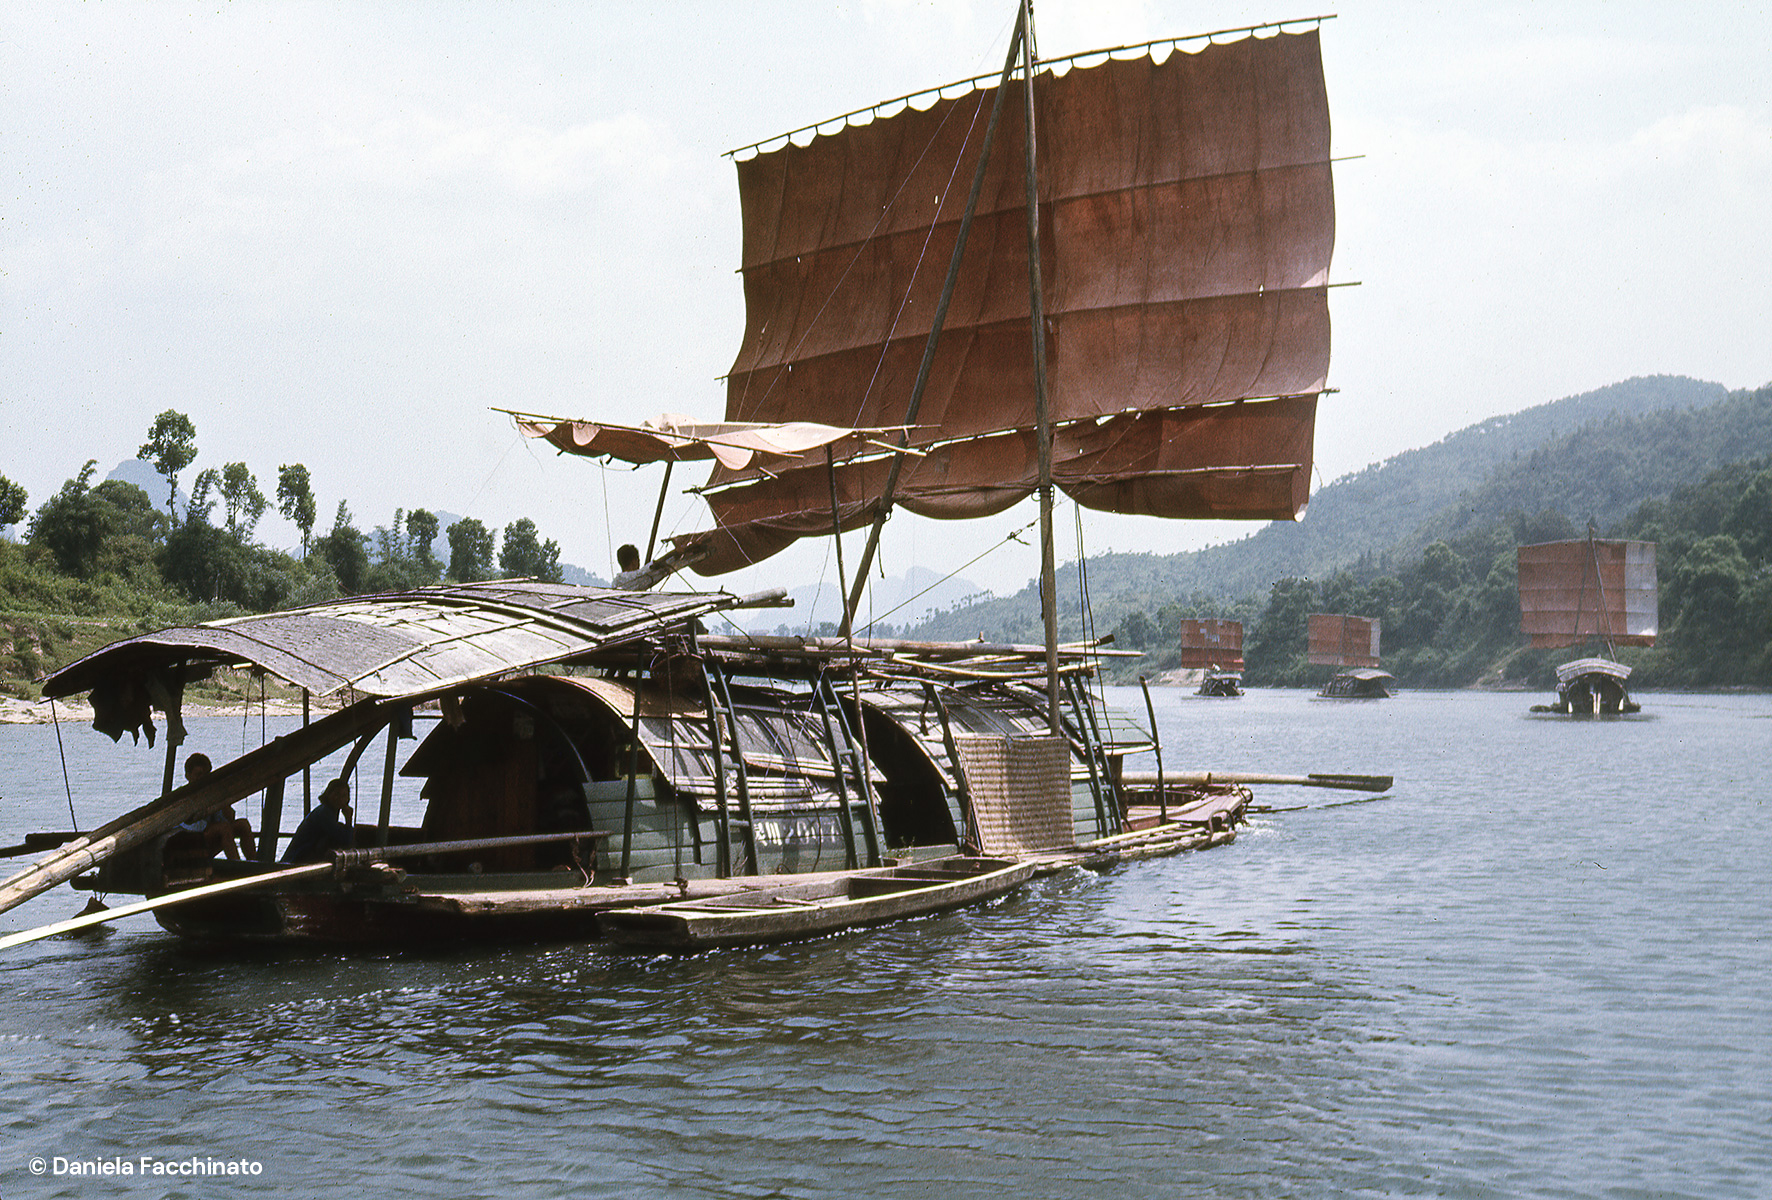 Guilin, Guangxi, China, 1975. River transport along the Li river